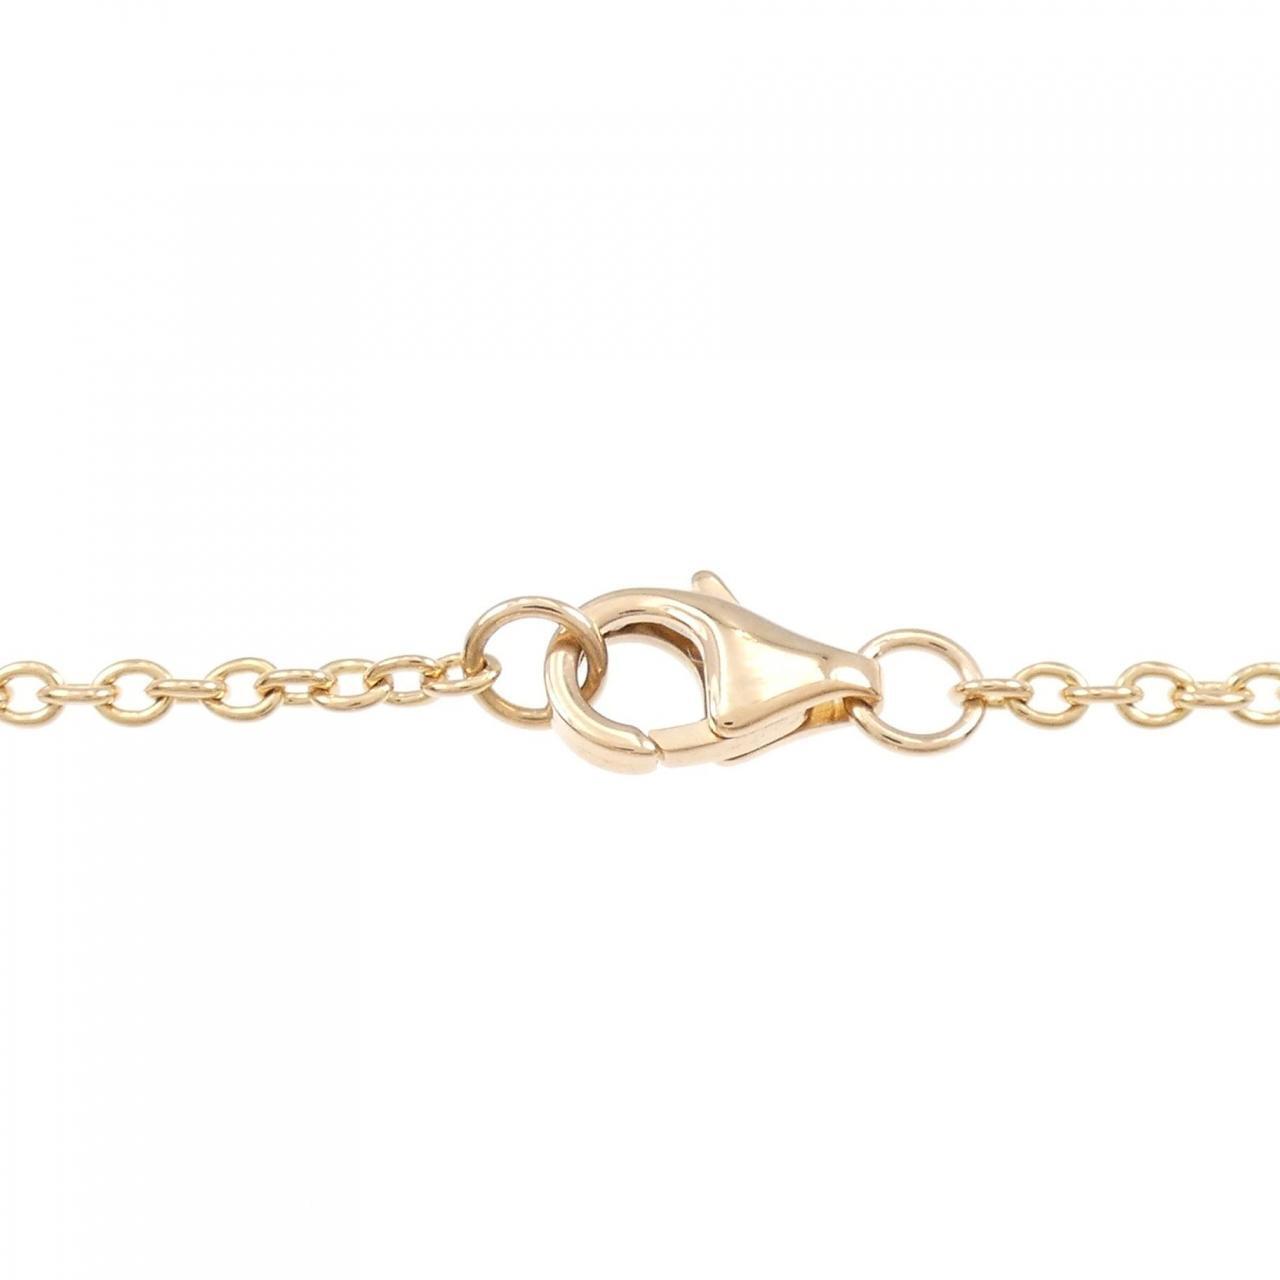 Authentic Cartier Baby Love Bracelet #260-004-547-5573